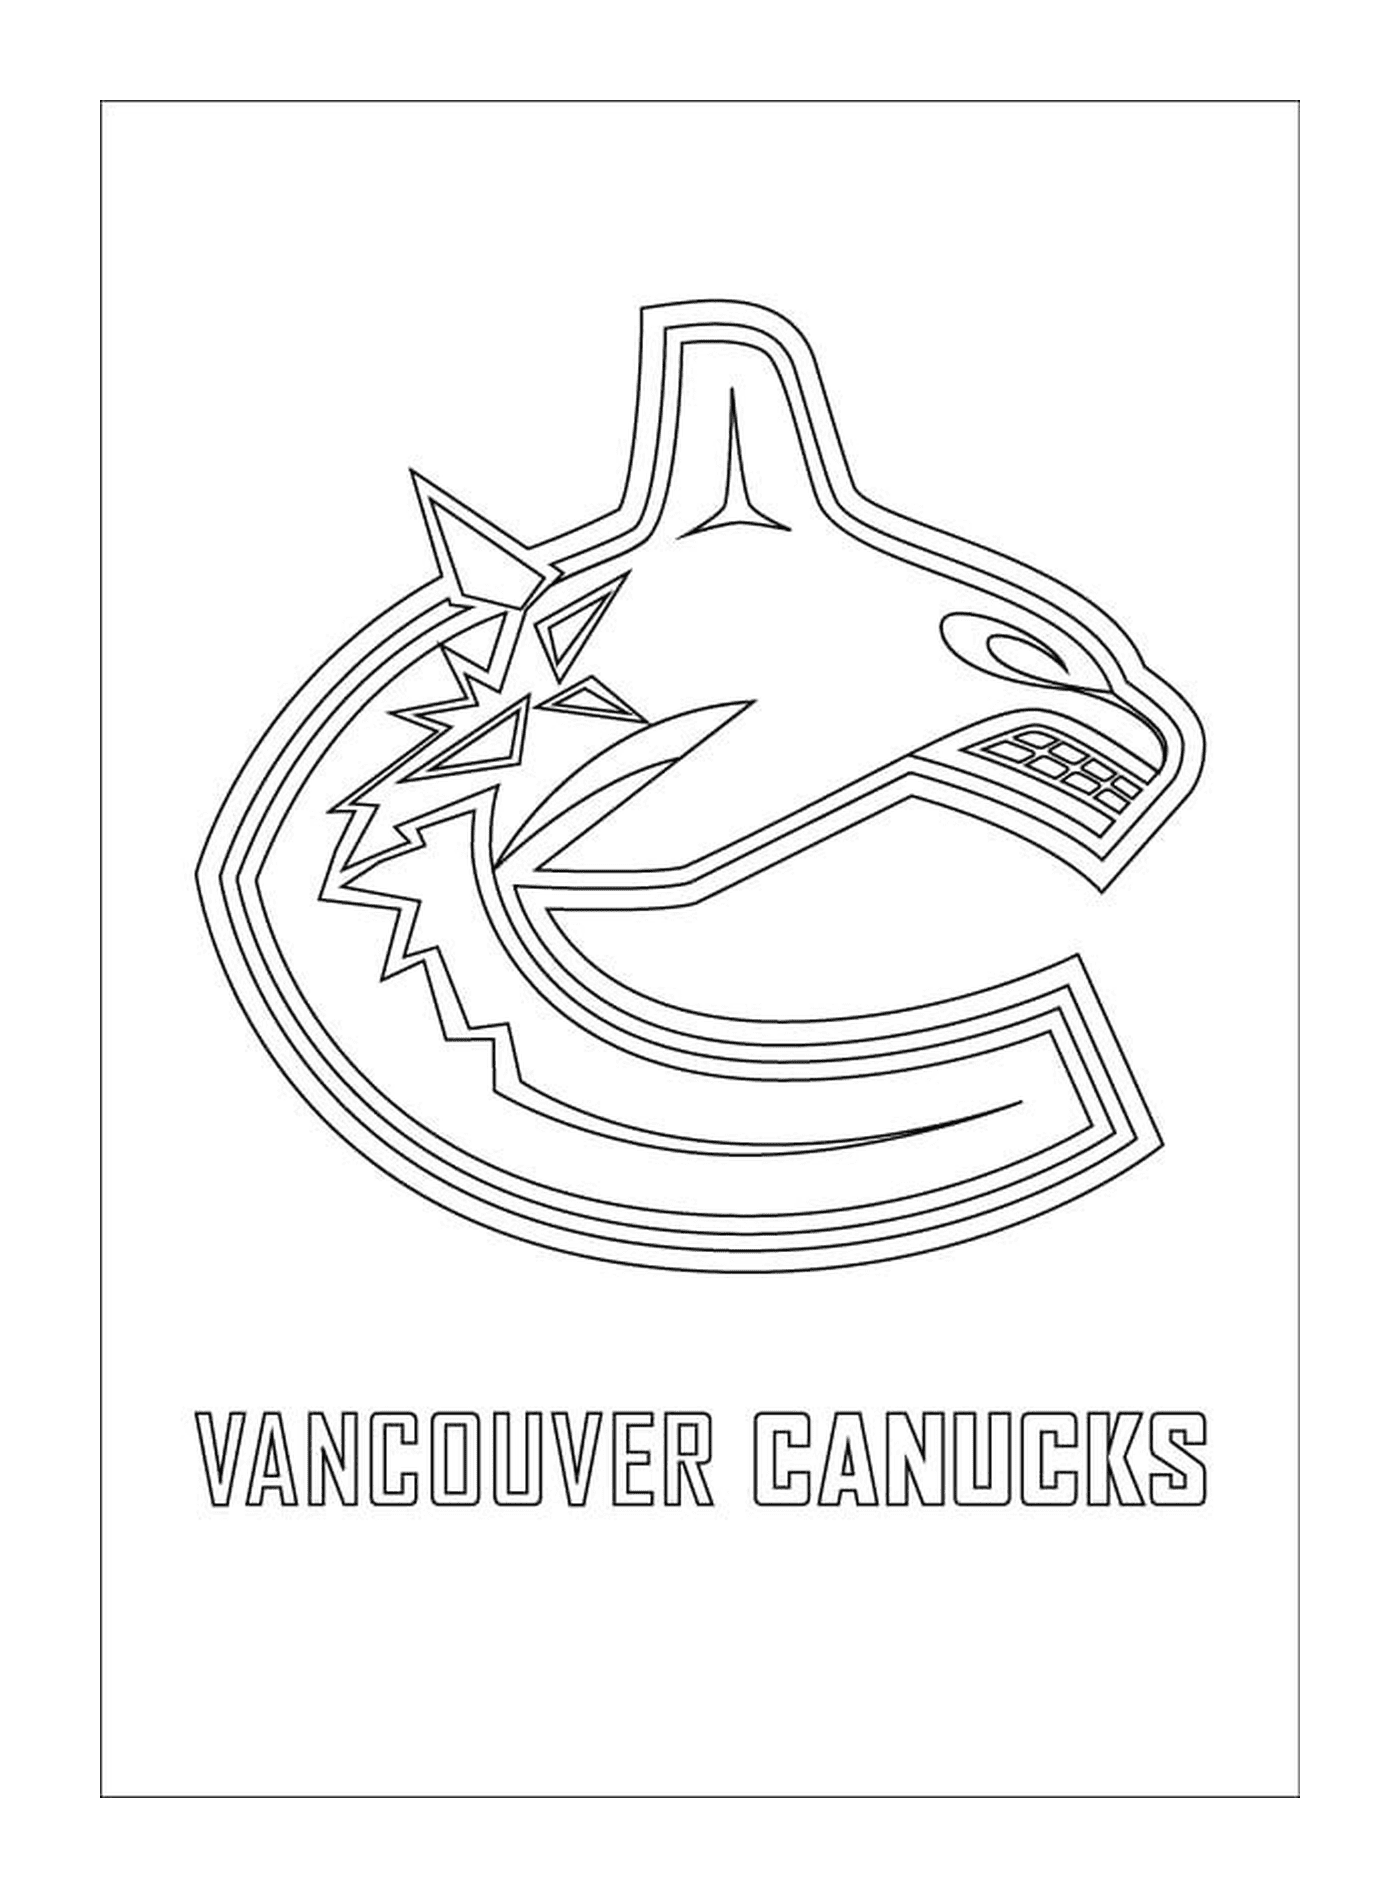  Logo de Vancouver Canucks 